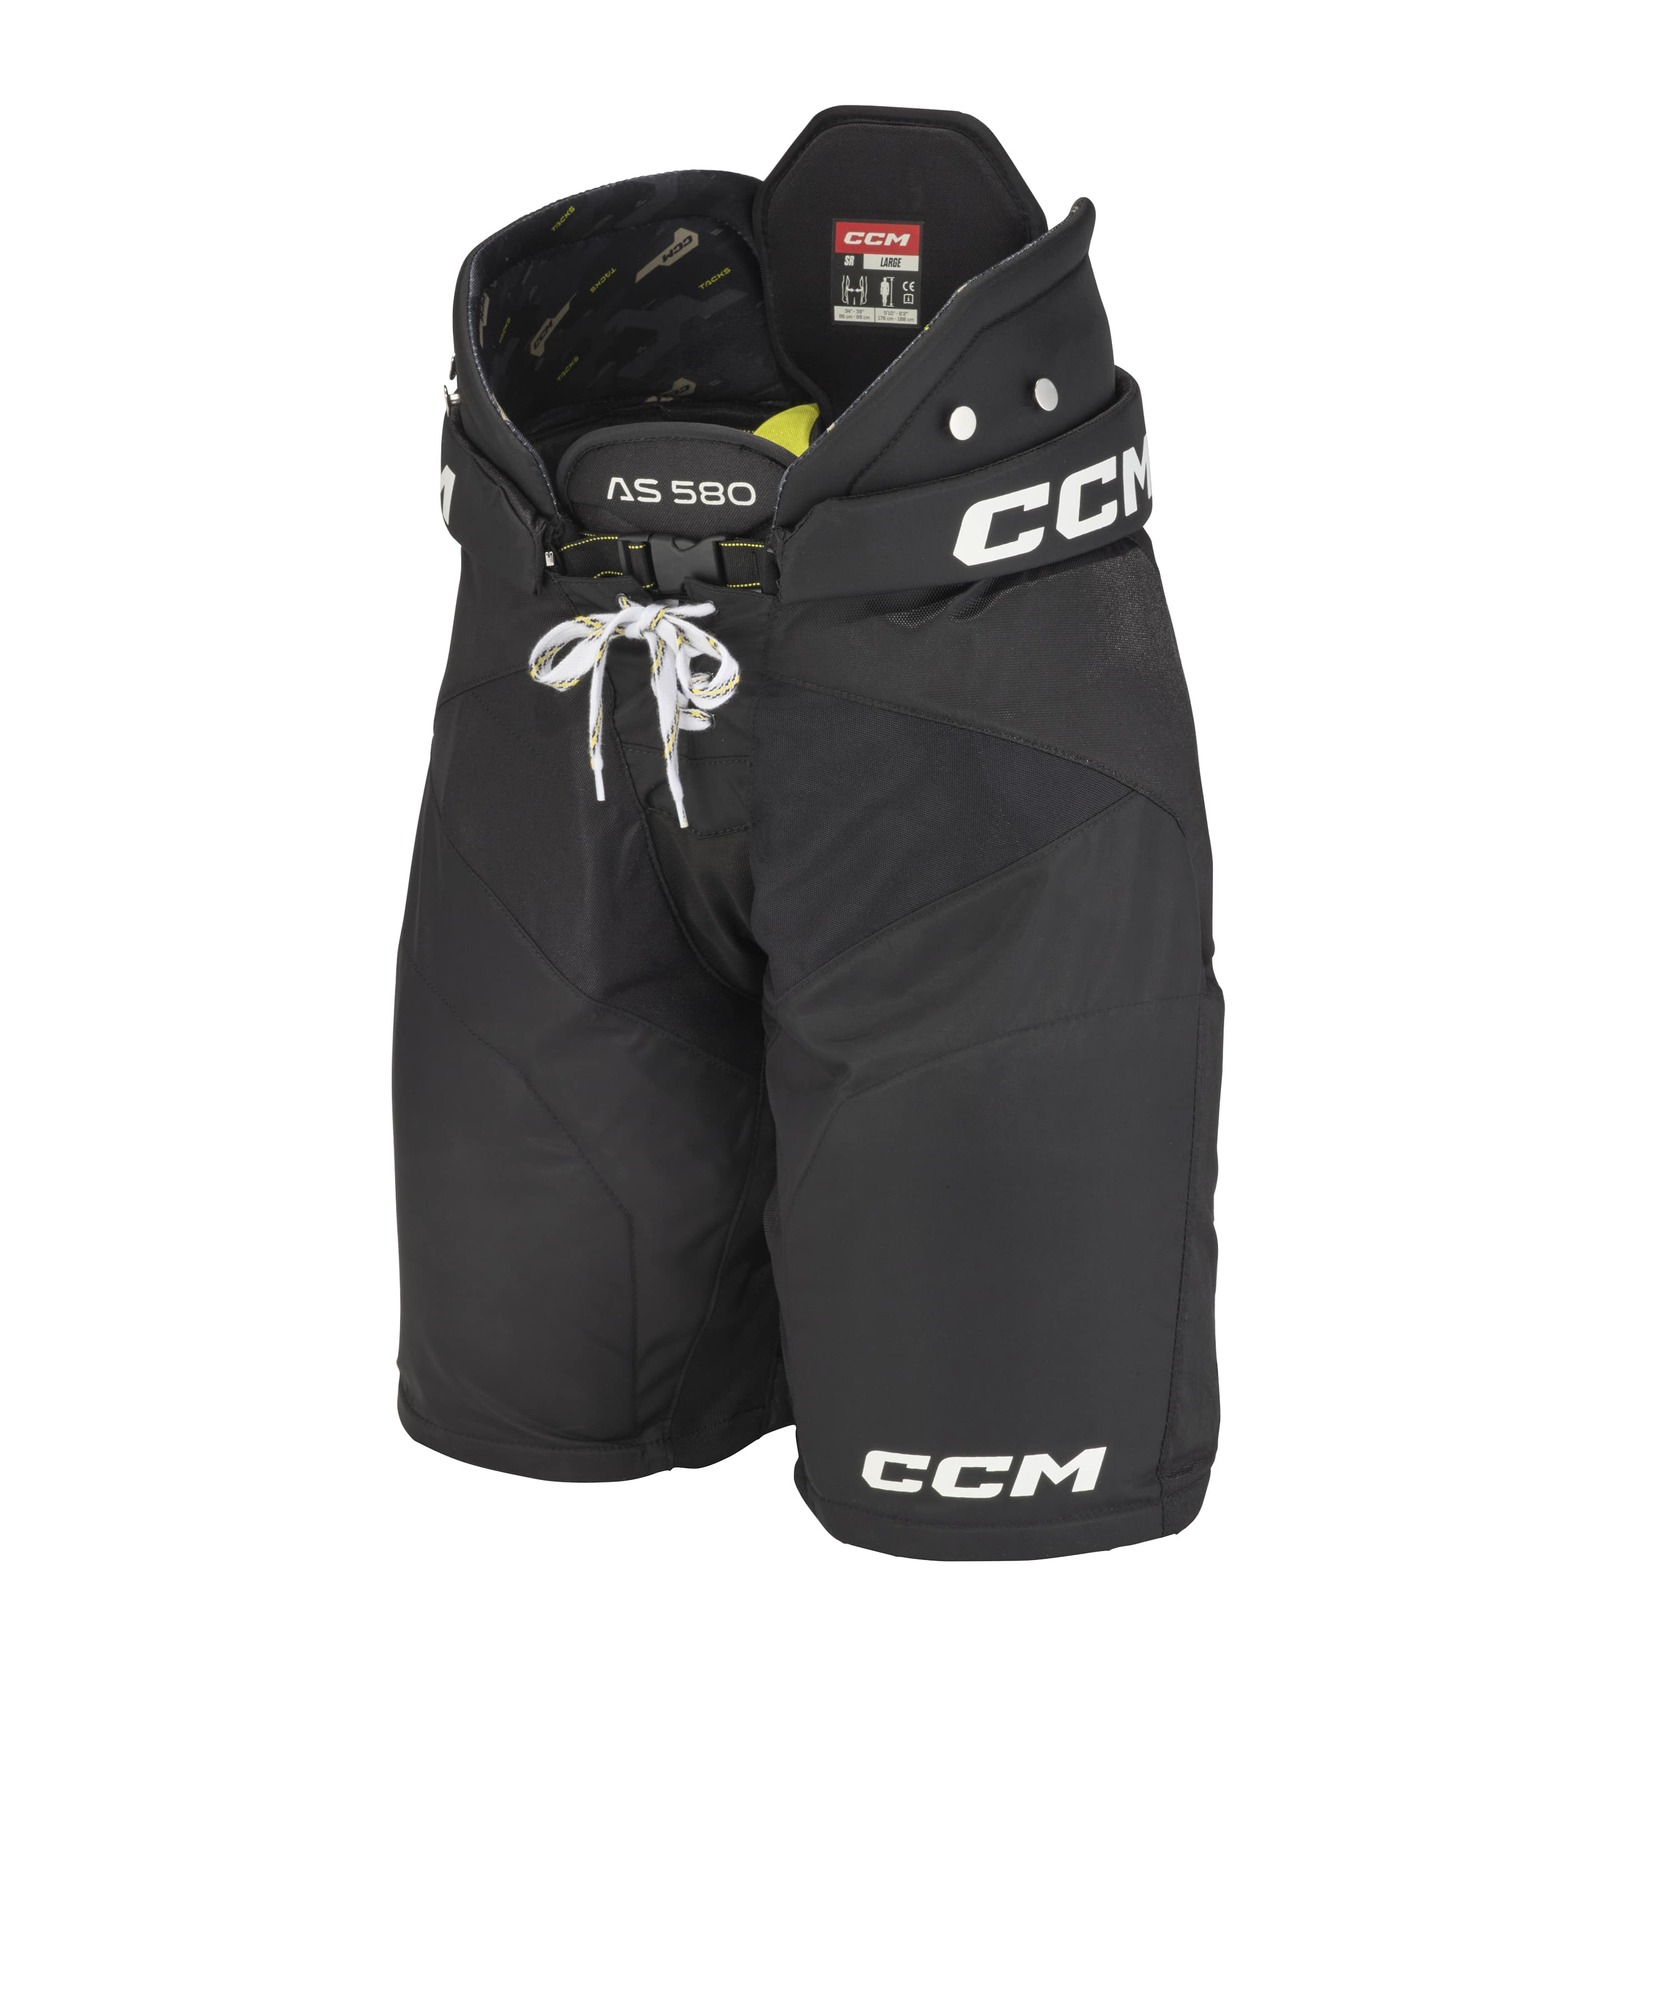 CCM Kalhoty CCM Tacks AS-580 SR